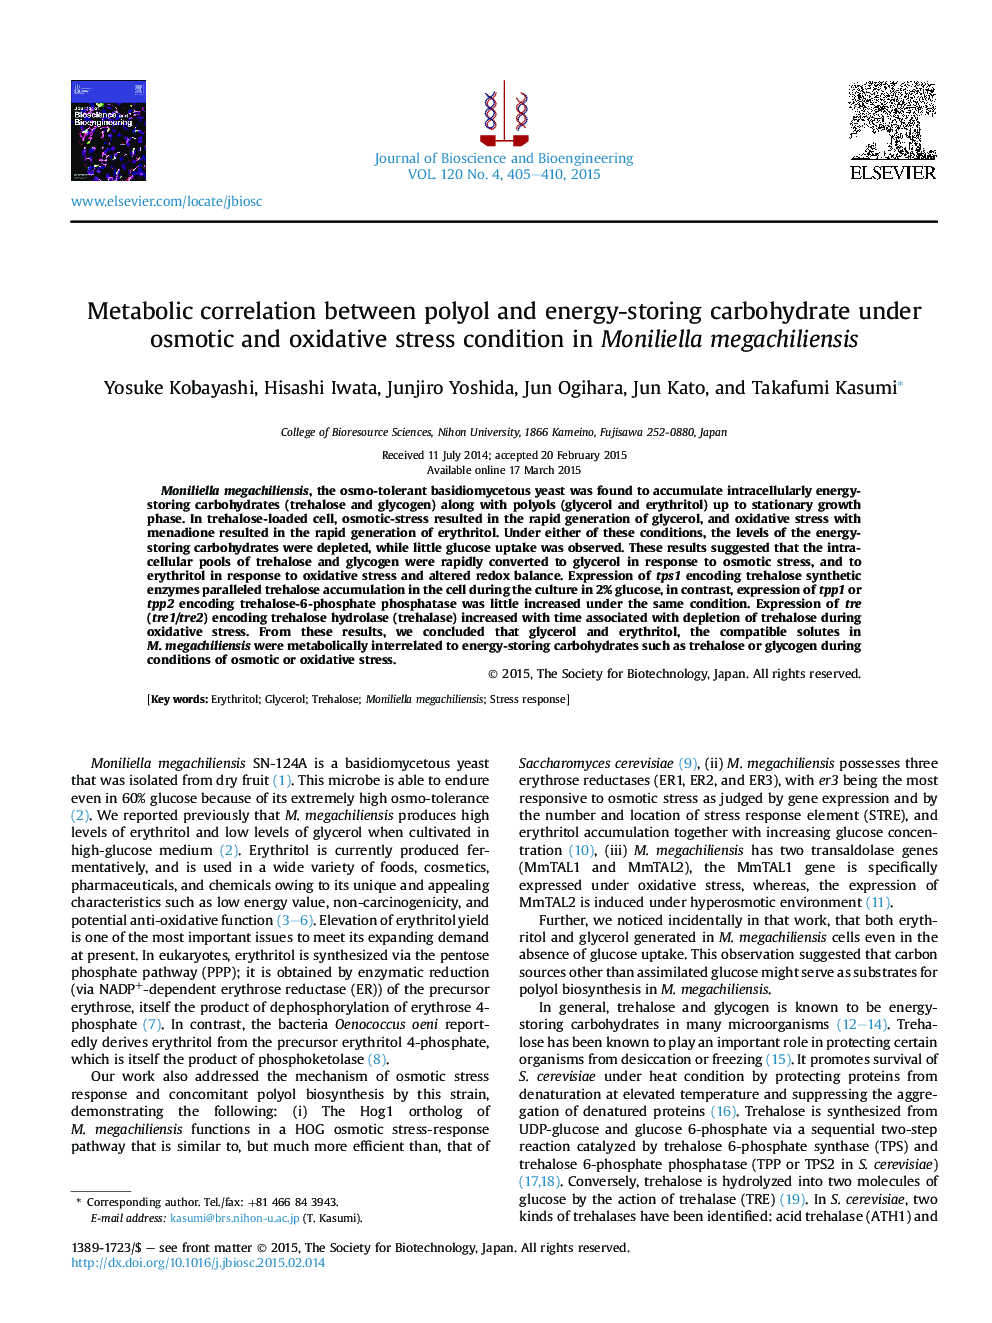 همبستگی متابولیکی بین پلیول و کربوهیدرات ذخیره انرژی در شرایط تنش اسمزی و اکسیداتیو در مونولیلا مگاکلیینسیس 